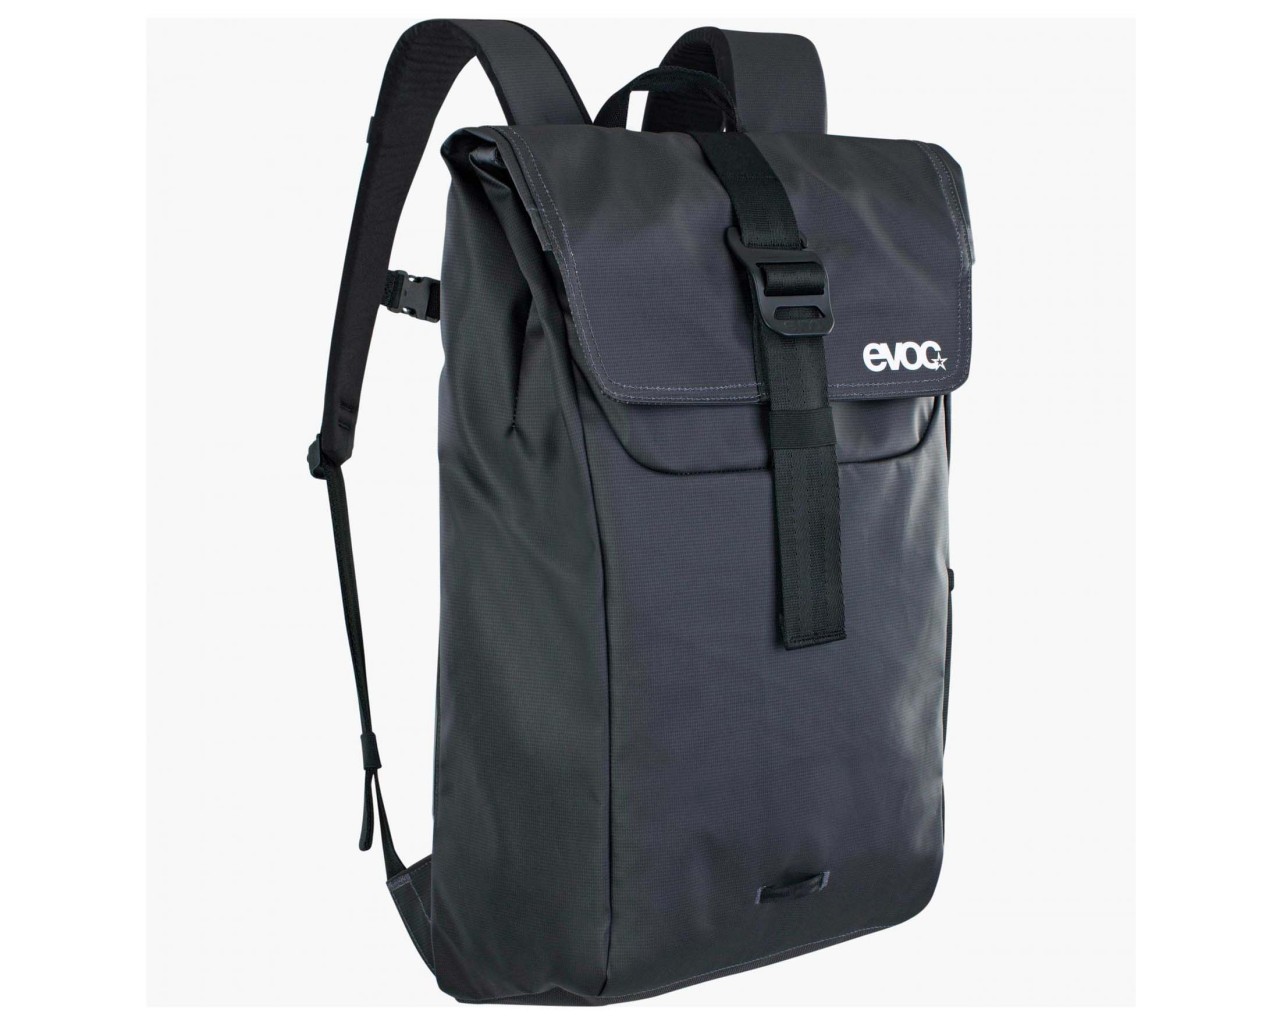 Evoc Duffle Backpack 16 Liter Rucksack | carbon grey-black